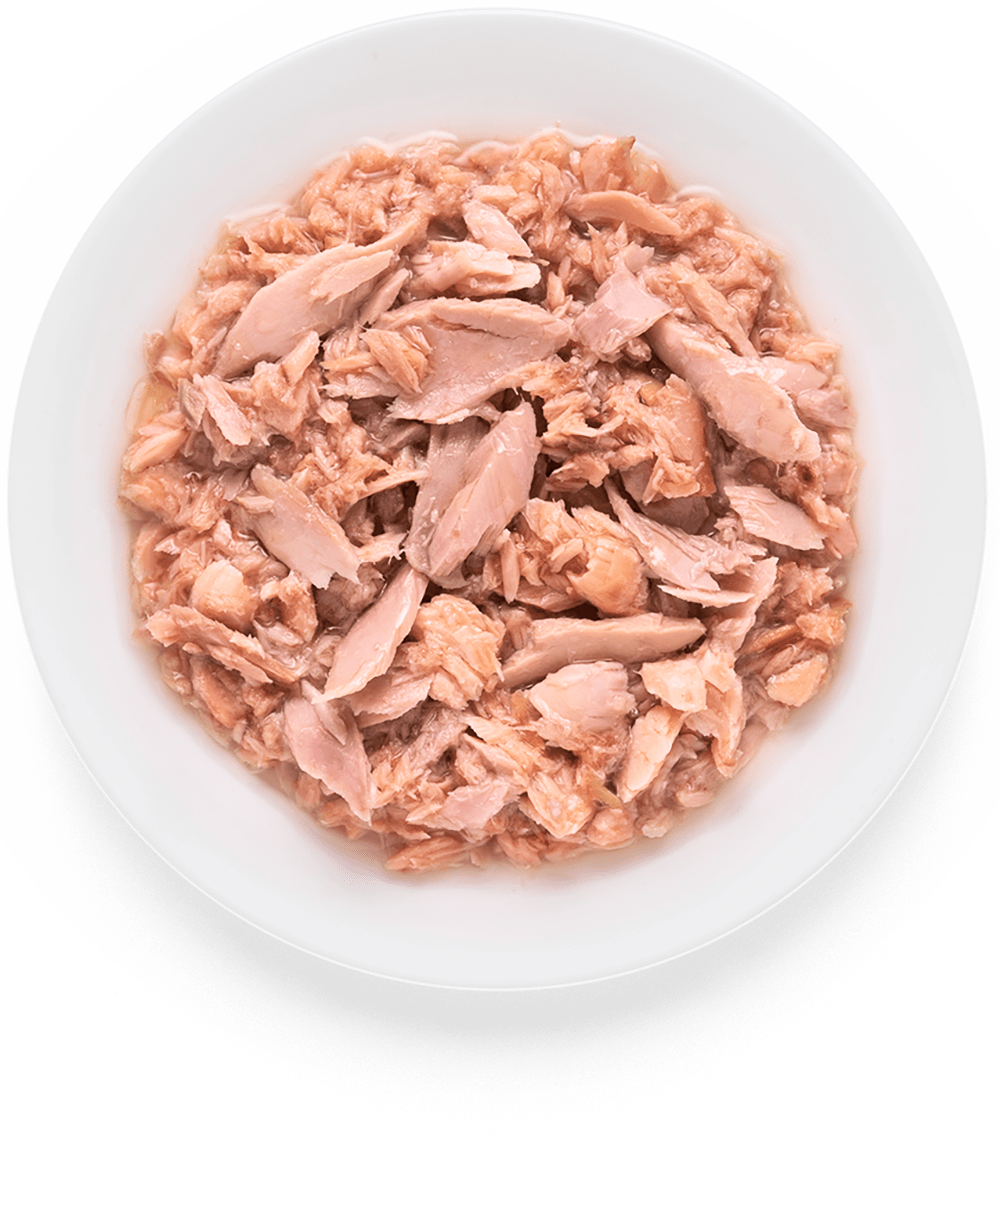 GRANDORF, Консервы д/кошек филе тунца с мясом лосося, 70 гр.